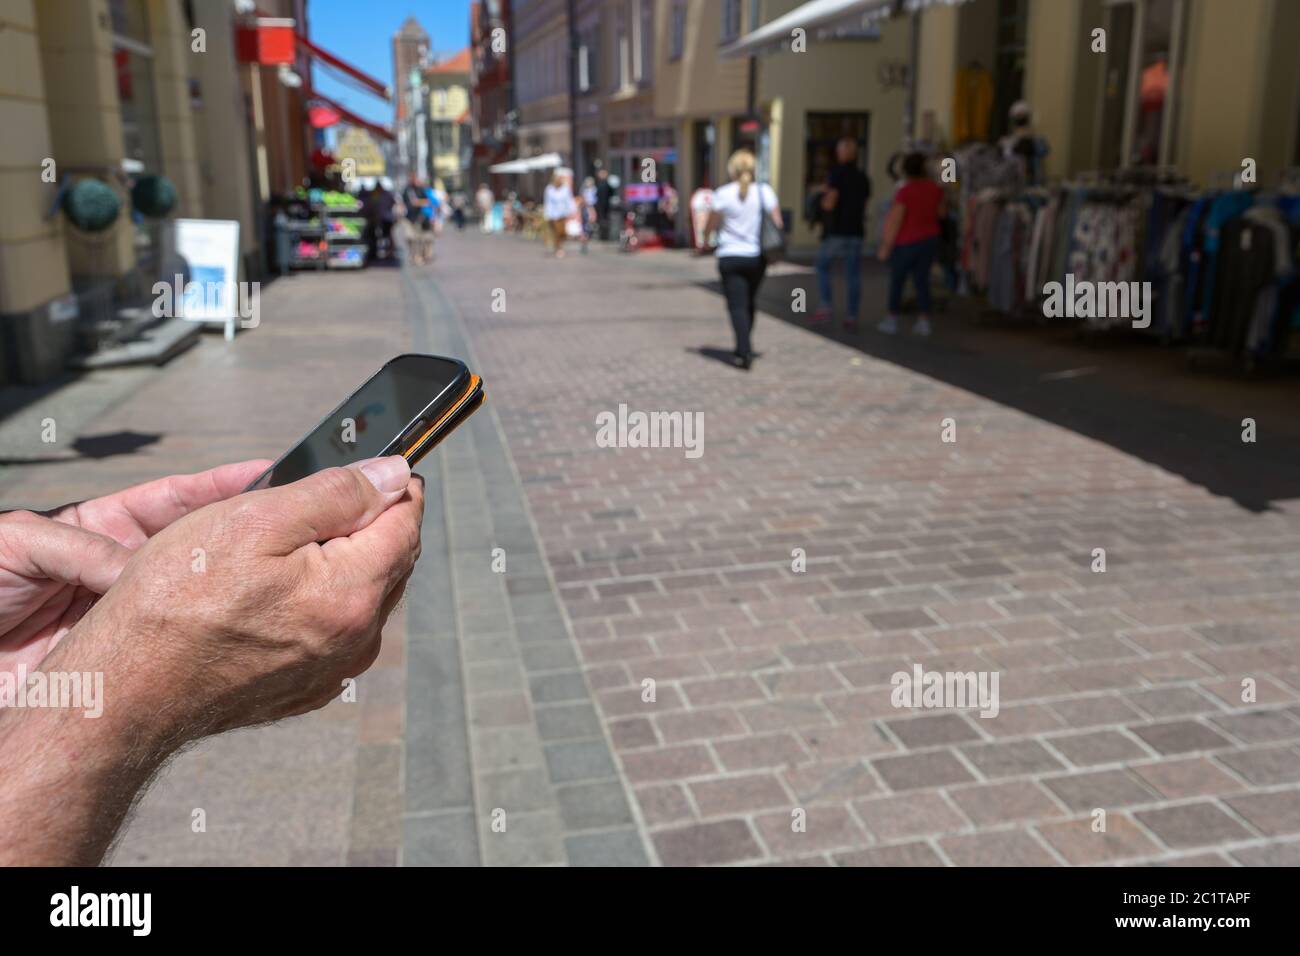 Hände halten ein Smartphone mit einer Kontaktverfolgungs-App gegen Coronavirus und Covid 19 Pandemie, eine deutsche Corona-Warn-Anwendung, um andere zu verbinden Stockfoto